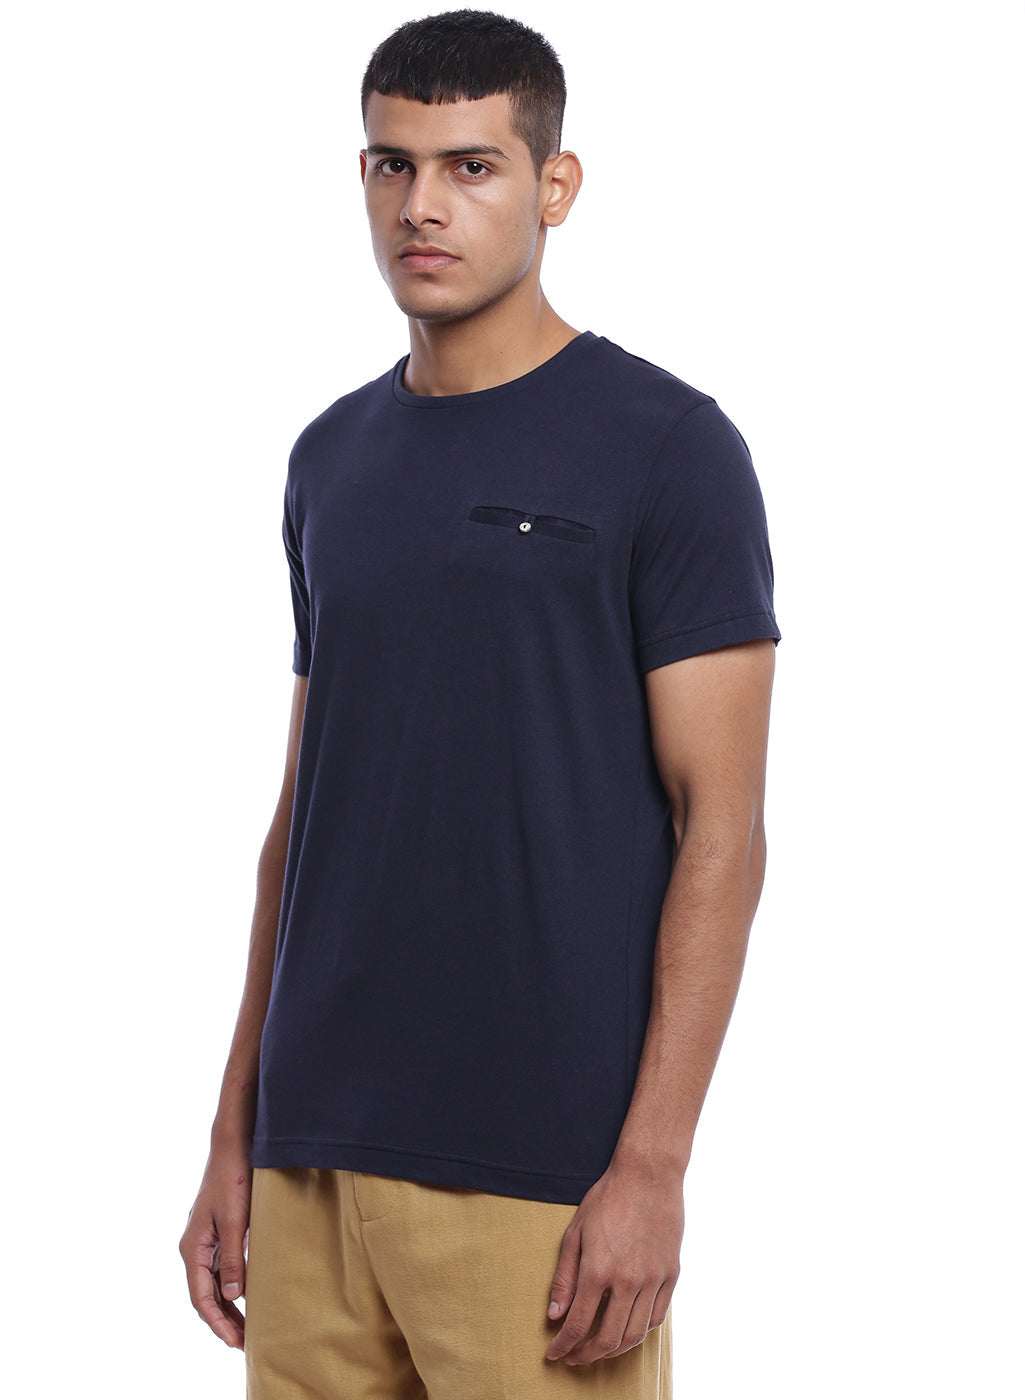 Blue Cotton T-shirt - Genes online store 2020